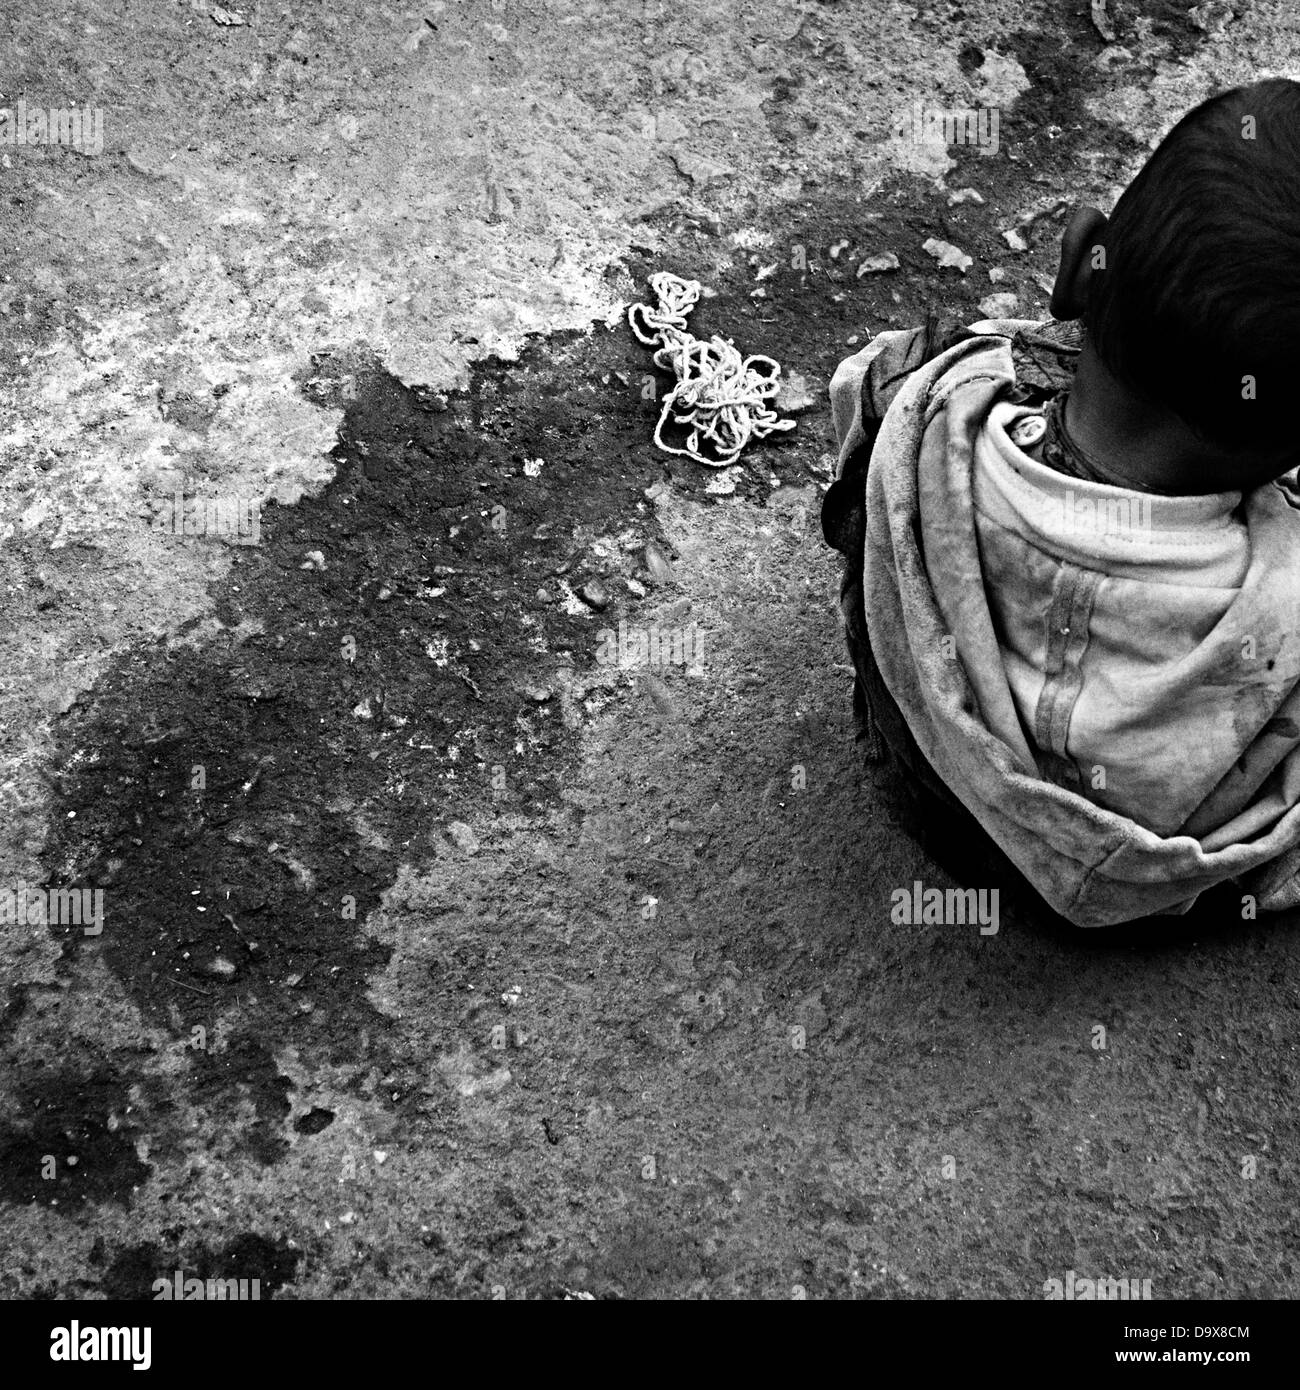 Junge spielt auf dem Boden, Jodhpur, Rajasthan, Indien Stockfoto